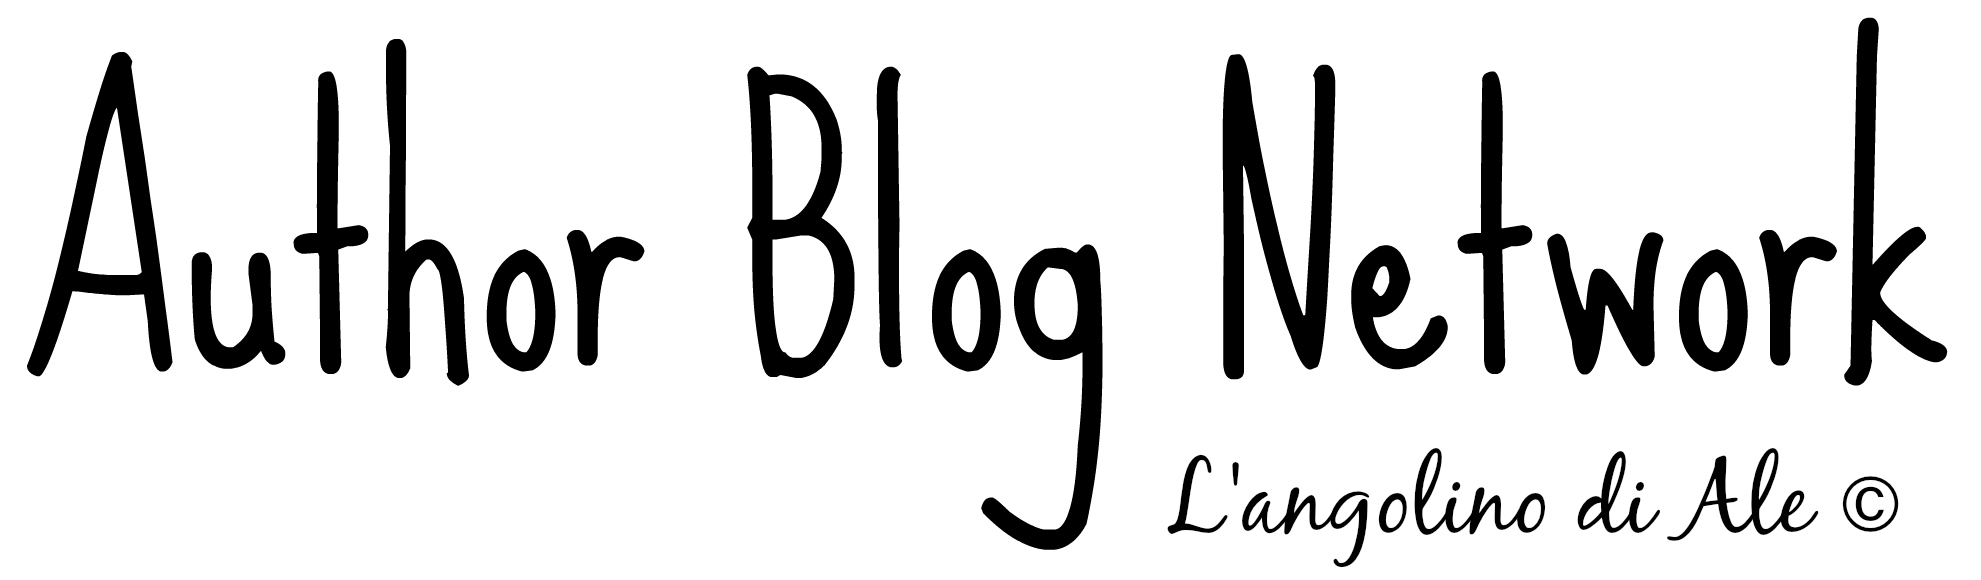 Author Blog Network - L'angolino di Ale